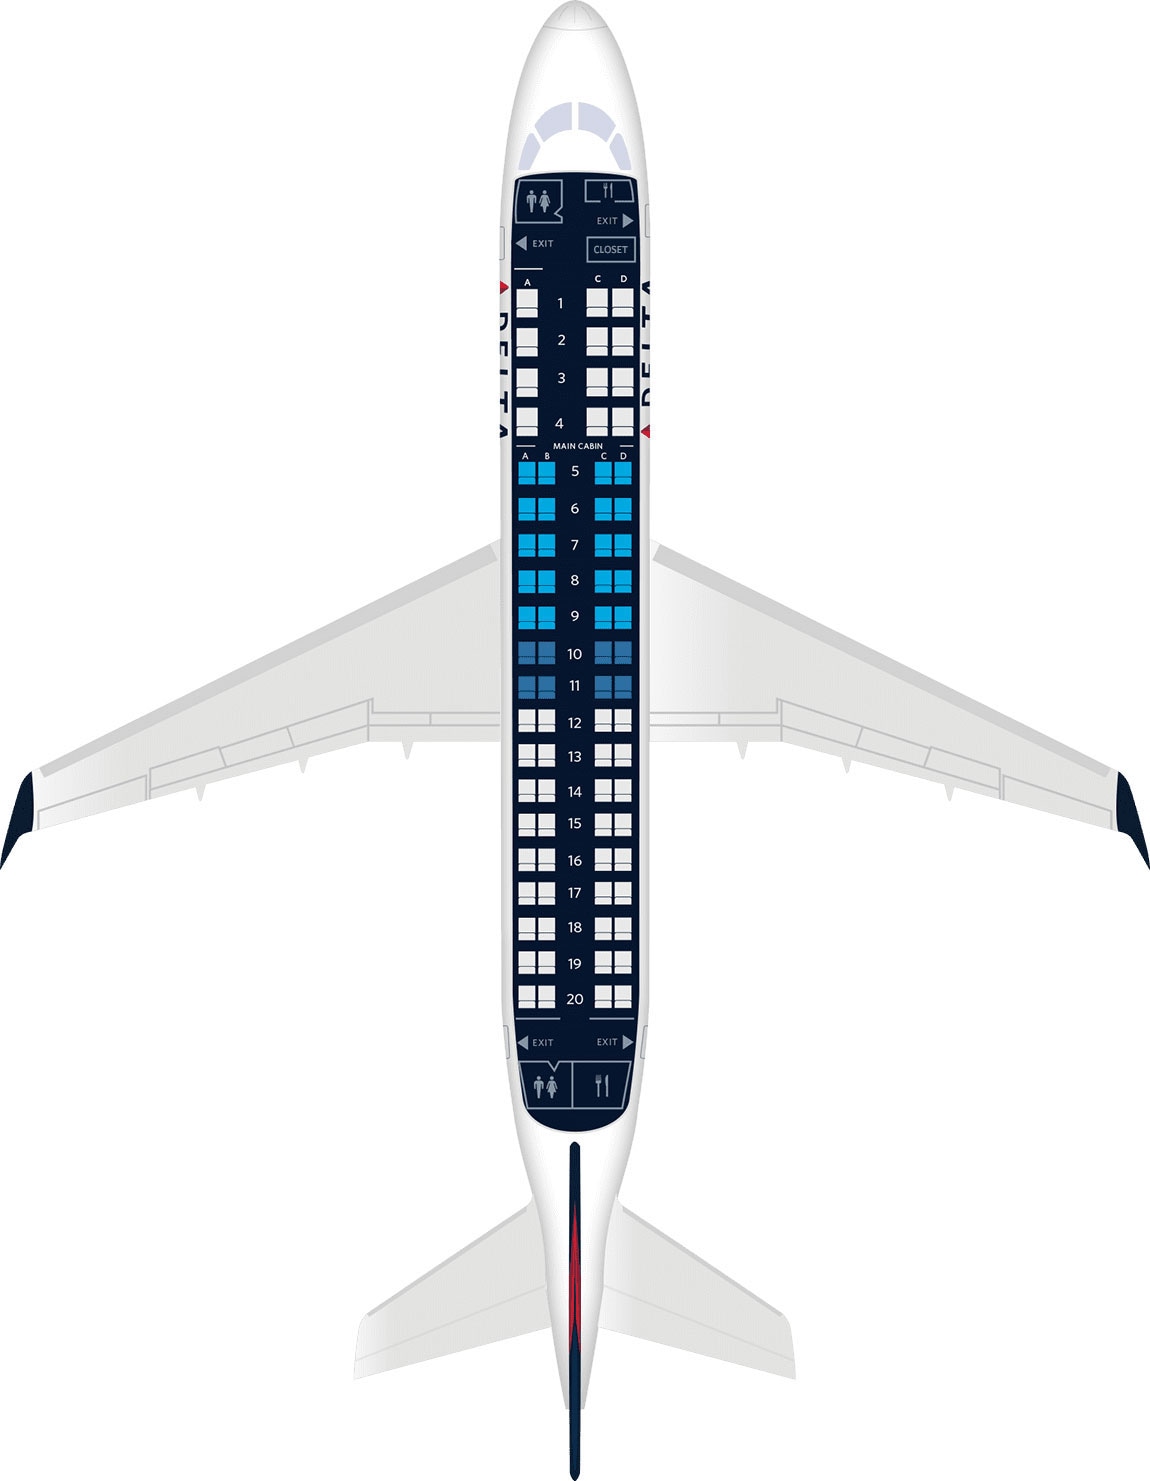 Embraer Erj 175 Aircraft Seat Maps Specs Amenities Delta Air Lines